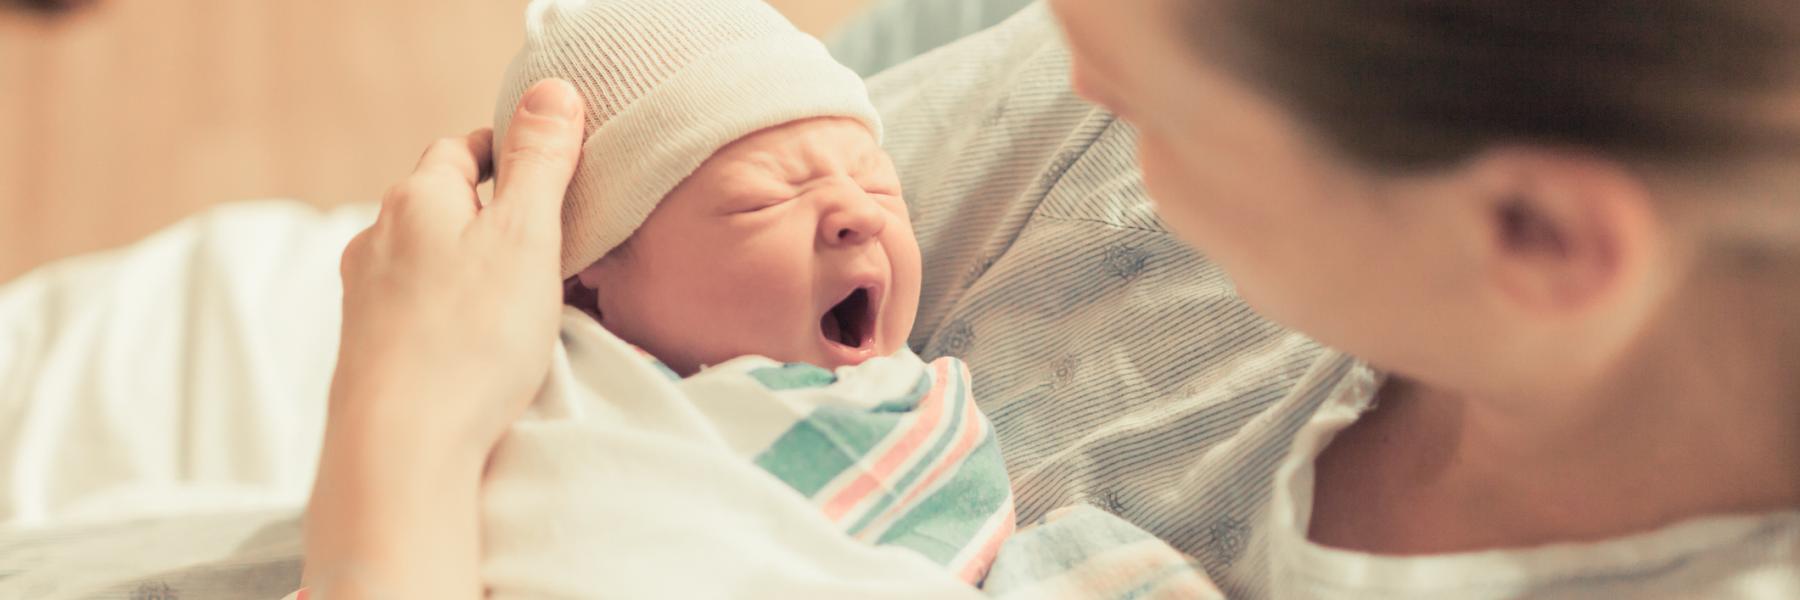 كيف تتعامل مع طفلك حديث الولادة!